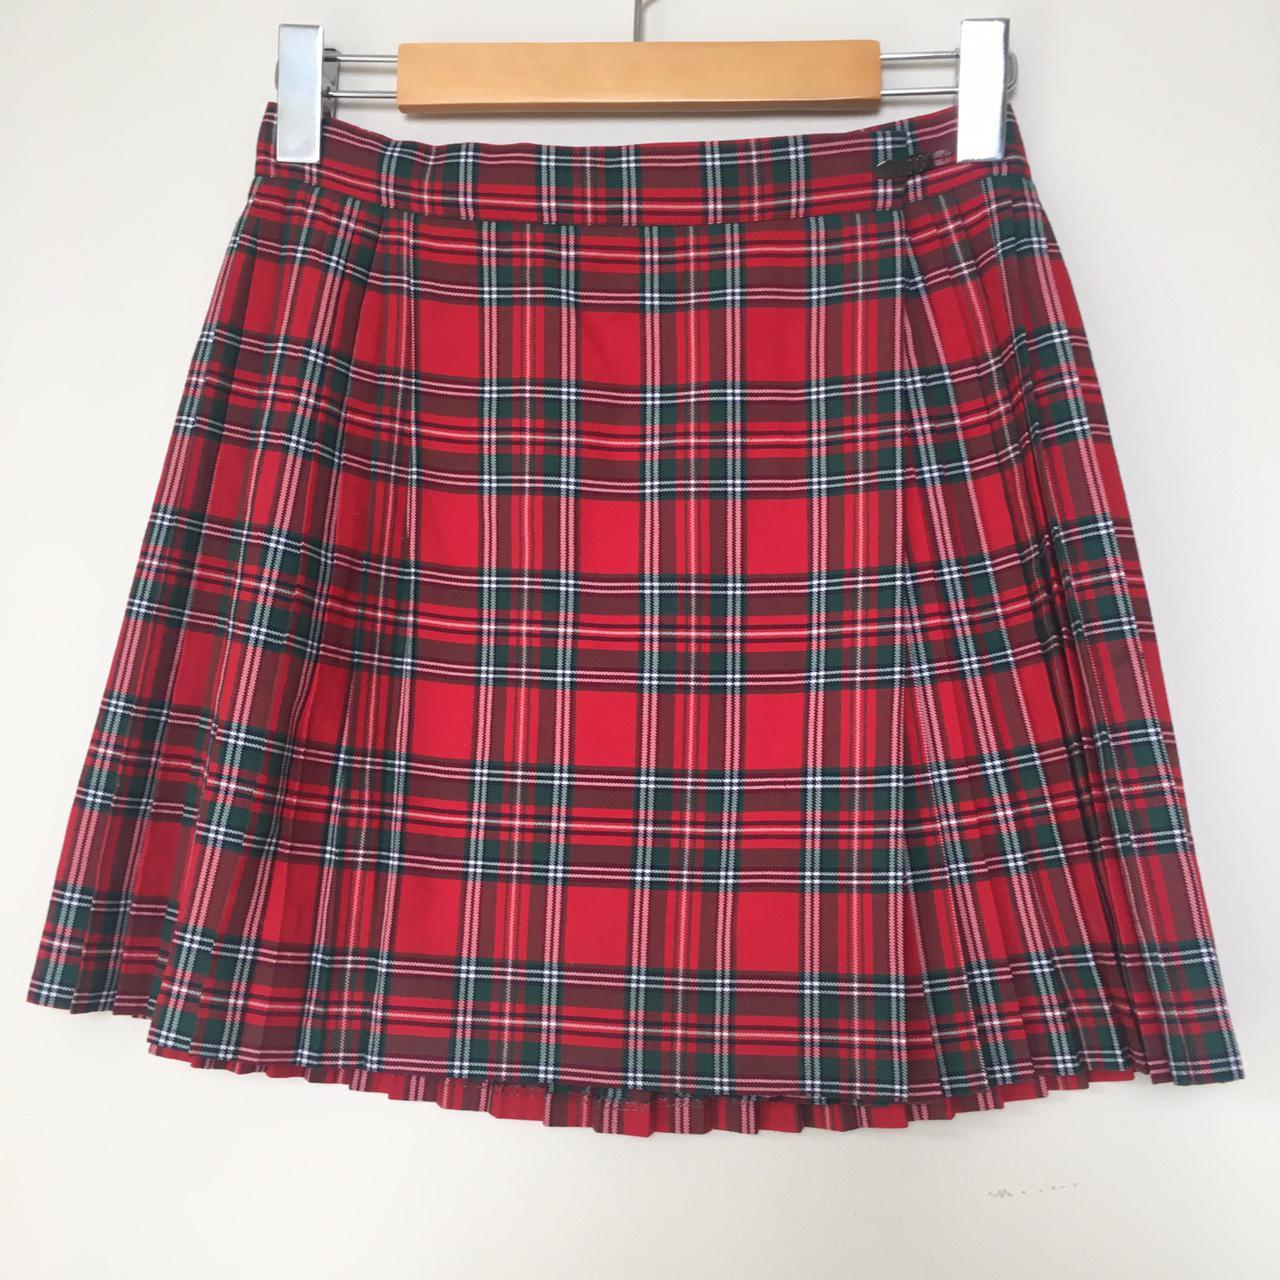 Vintage pleated plaid netball skirt Brand: Sleeke... - Depop